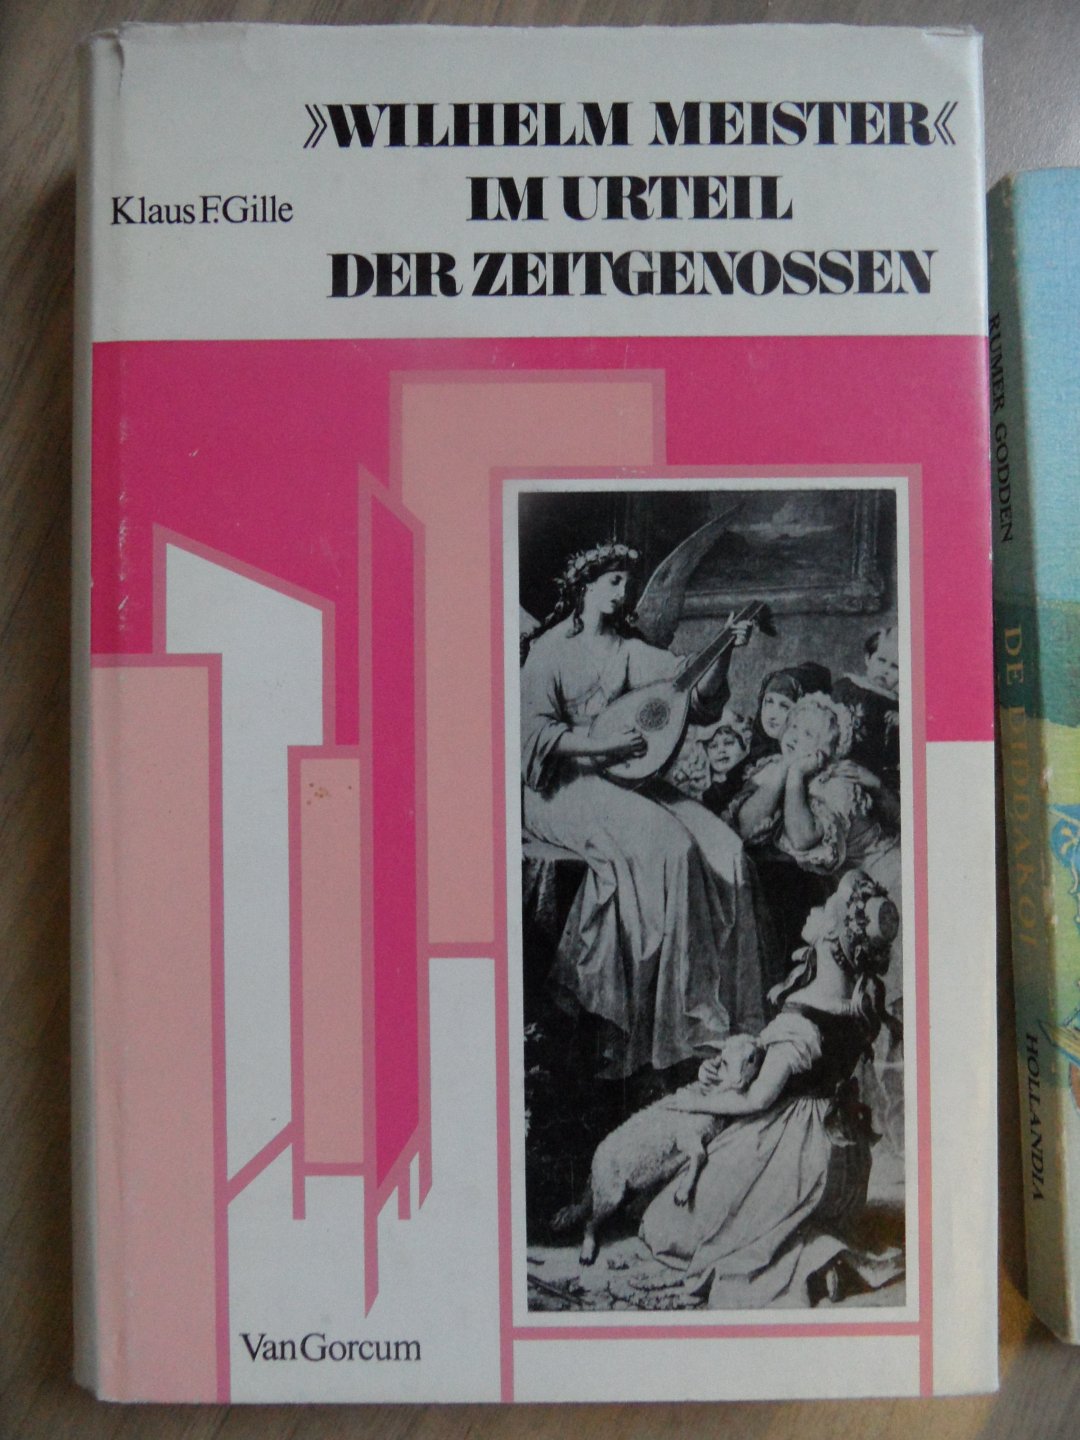 Gille, Klaus F. - Wilhelm Meister" im Urteil der Zeitgenossen